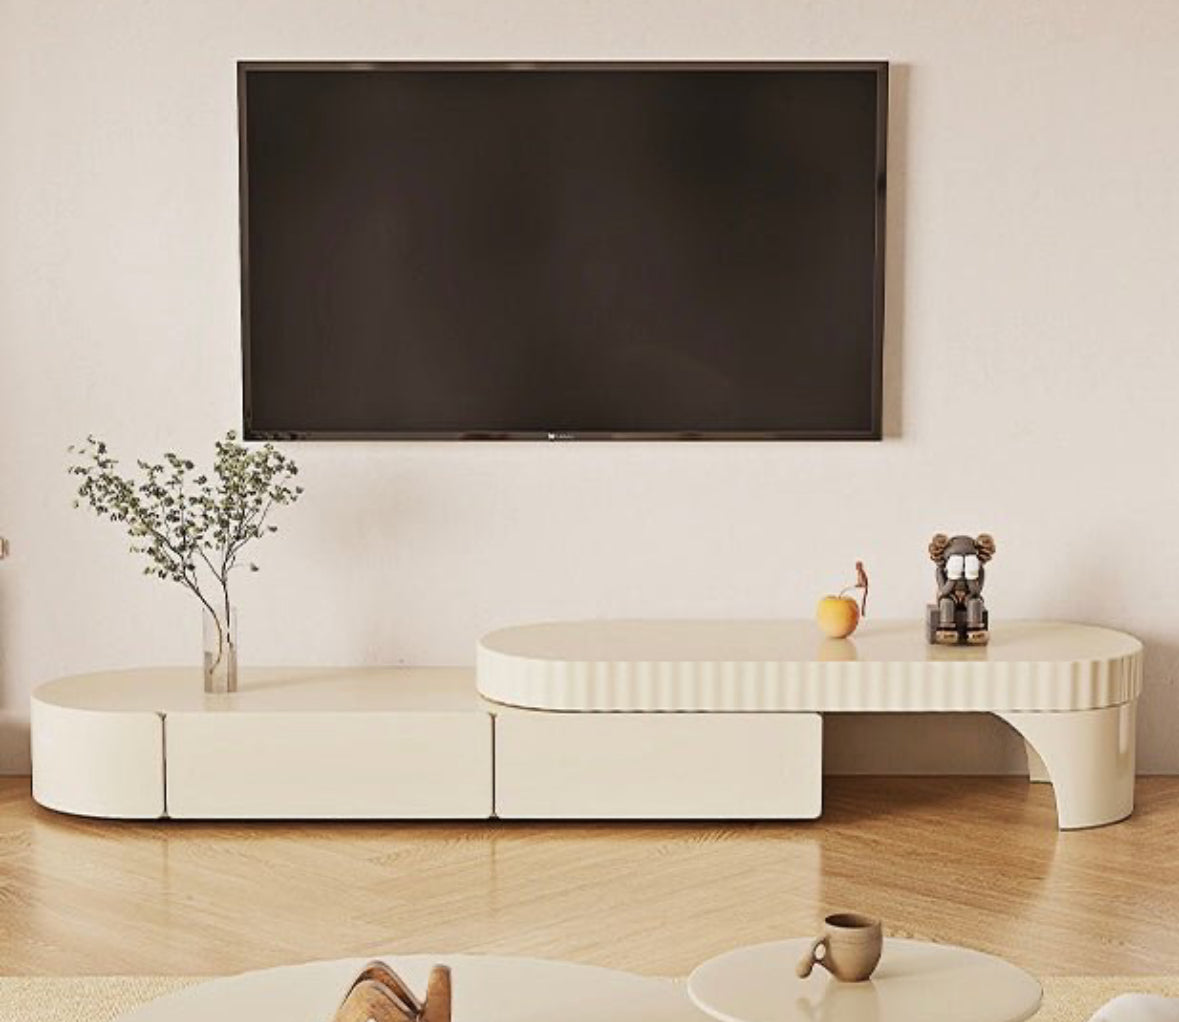 Luxury tv wooden table